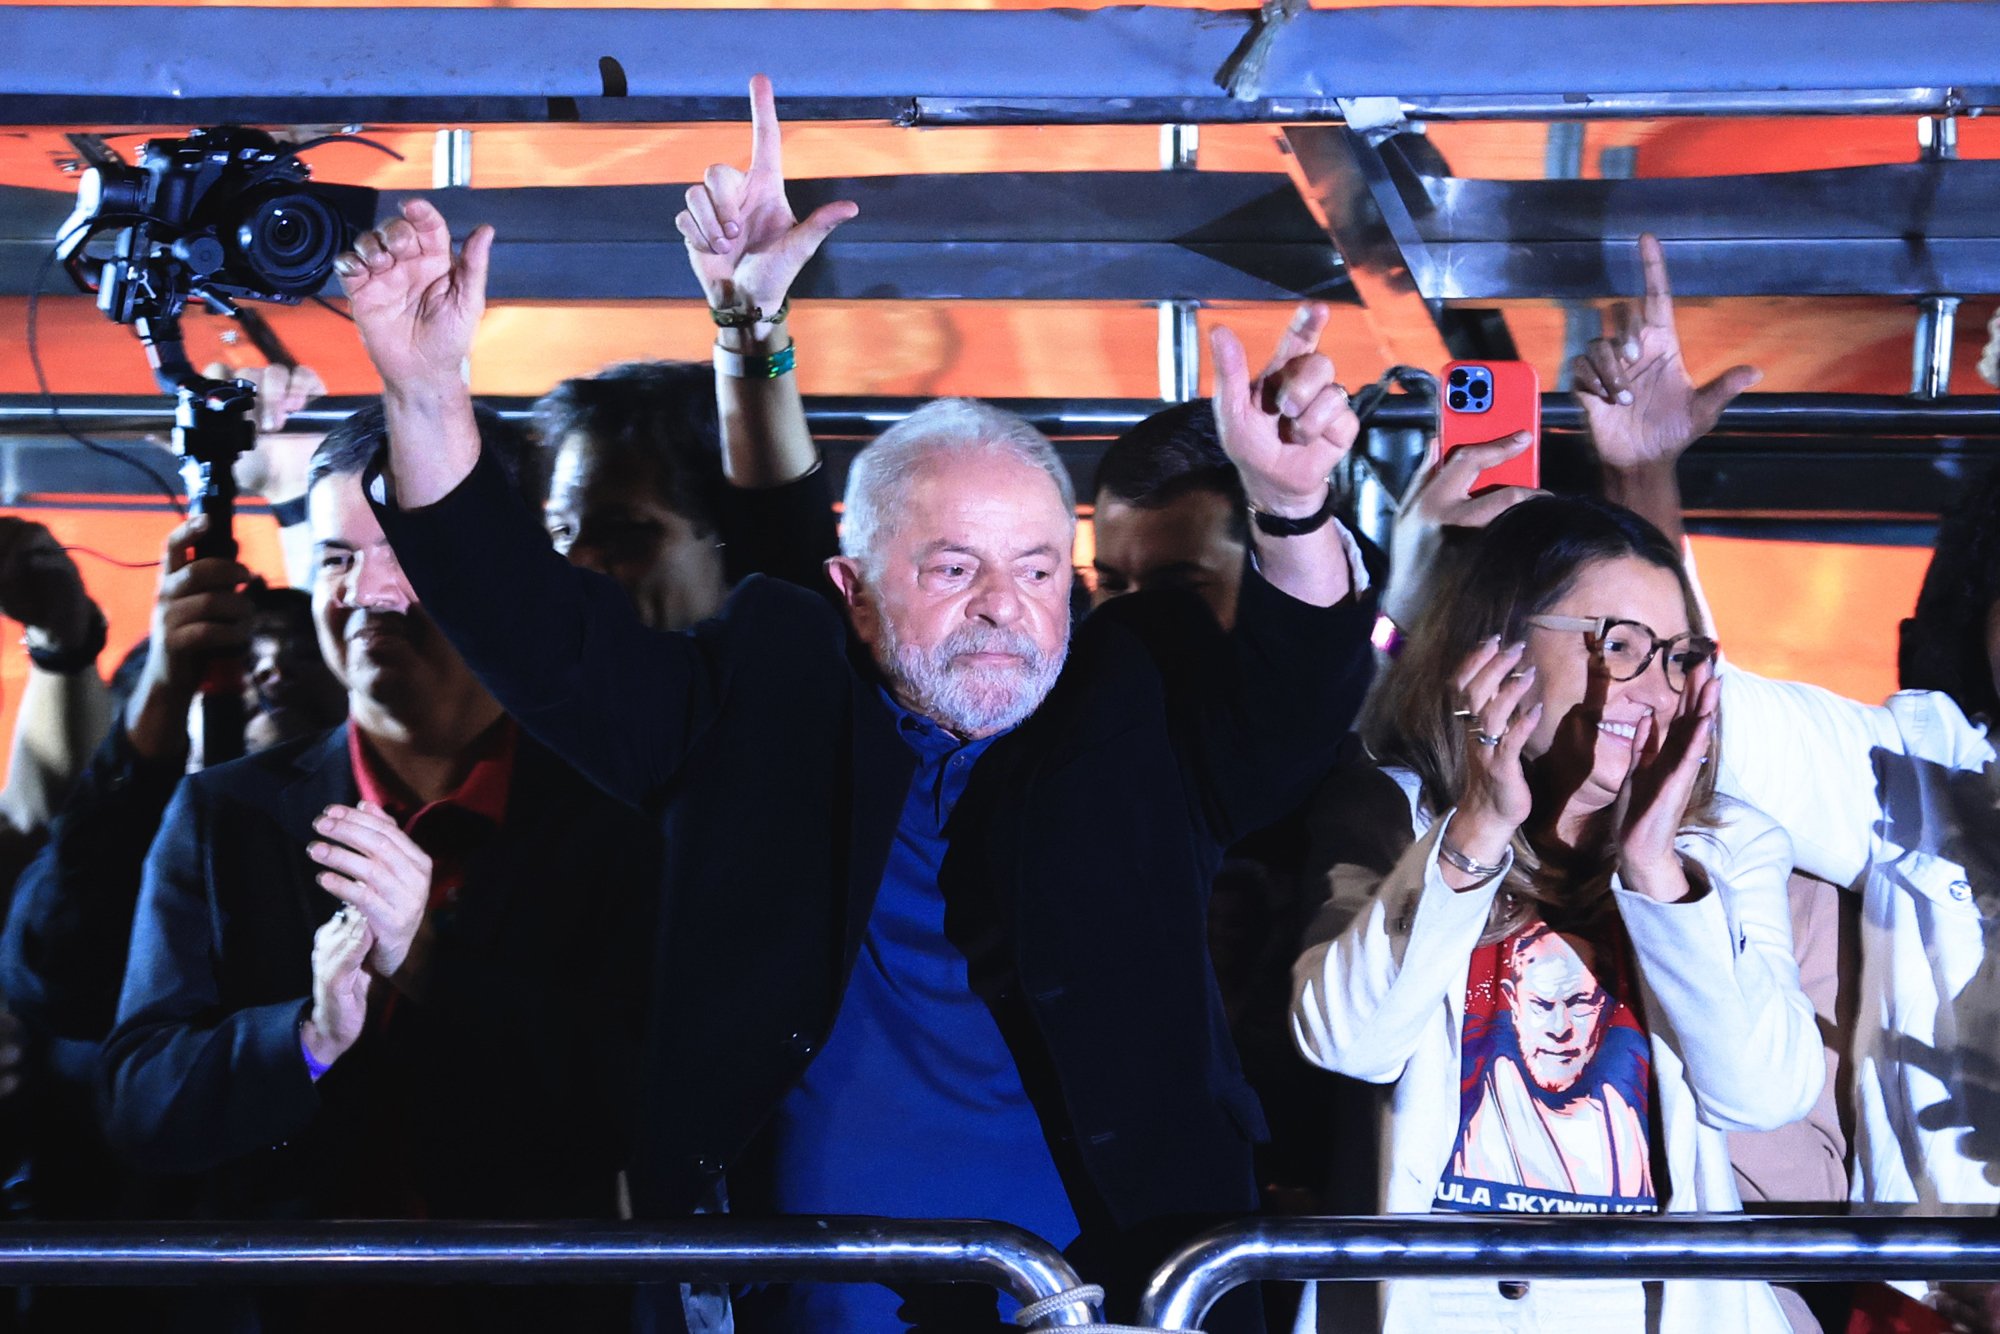 Eleccions Brasil: Lula guanya la primera volta però Bolsonaro li trepitja els talons